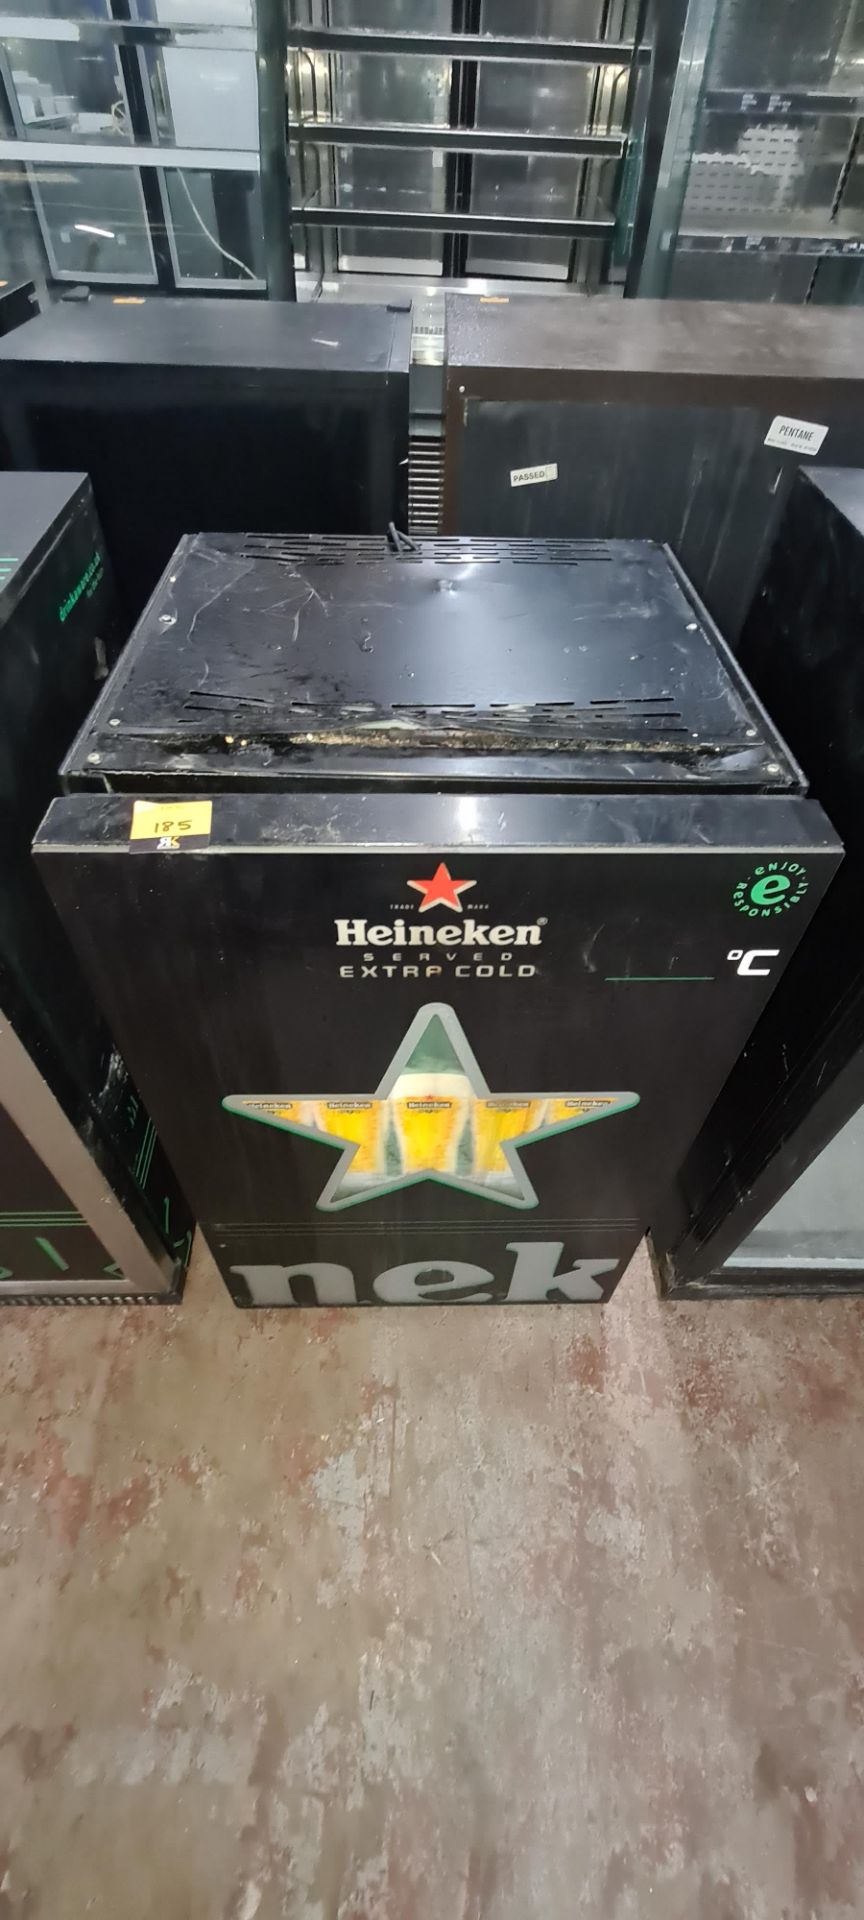 Heineken branded back bar/bottle fridge